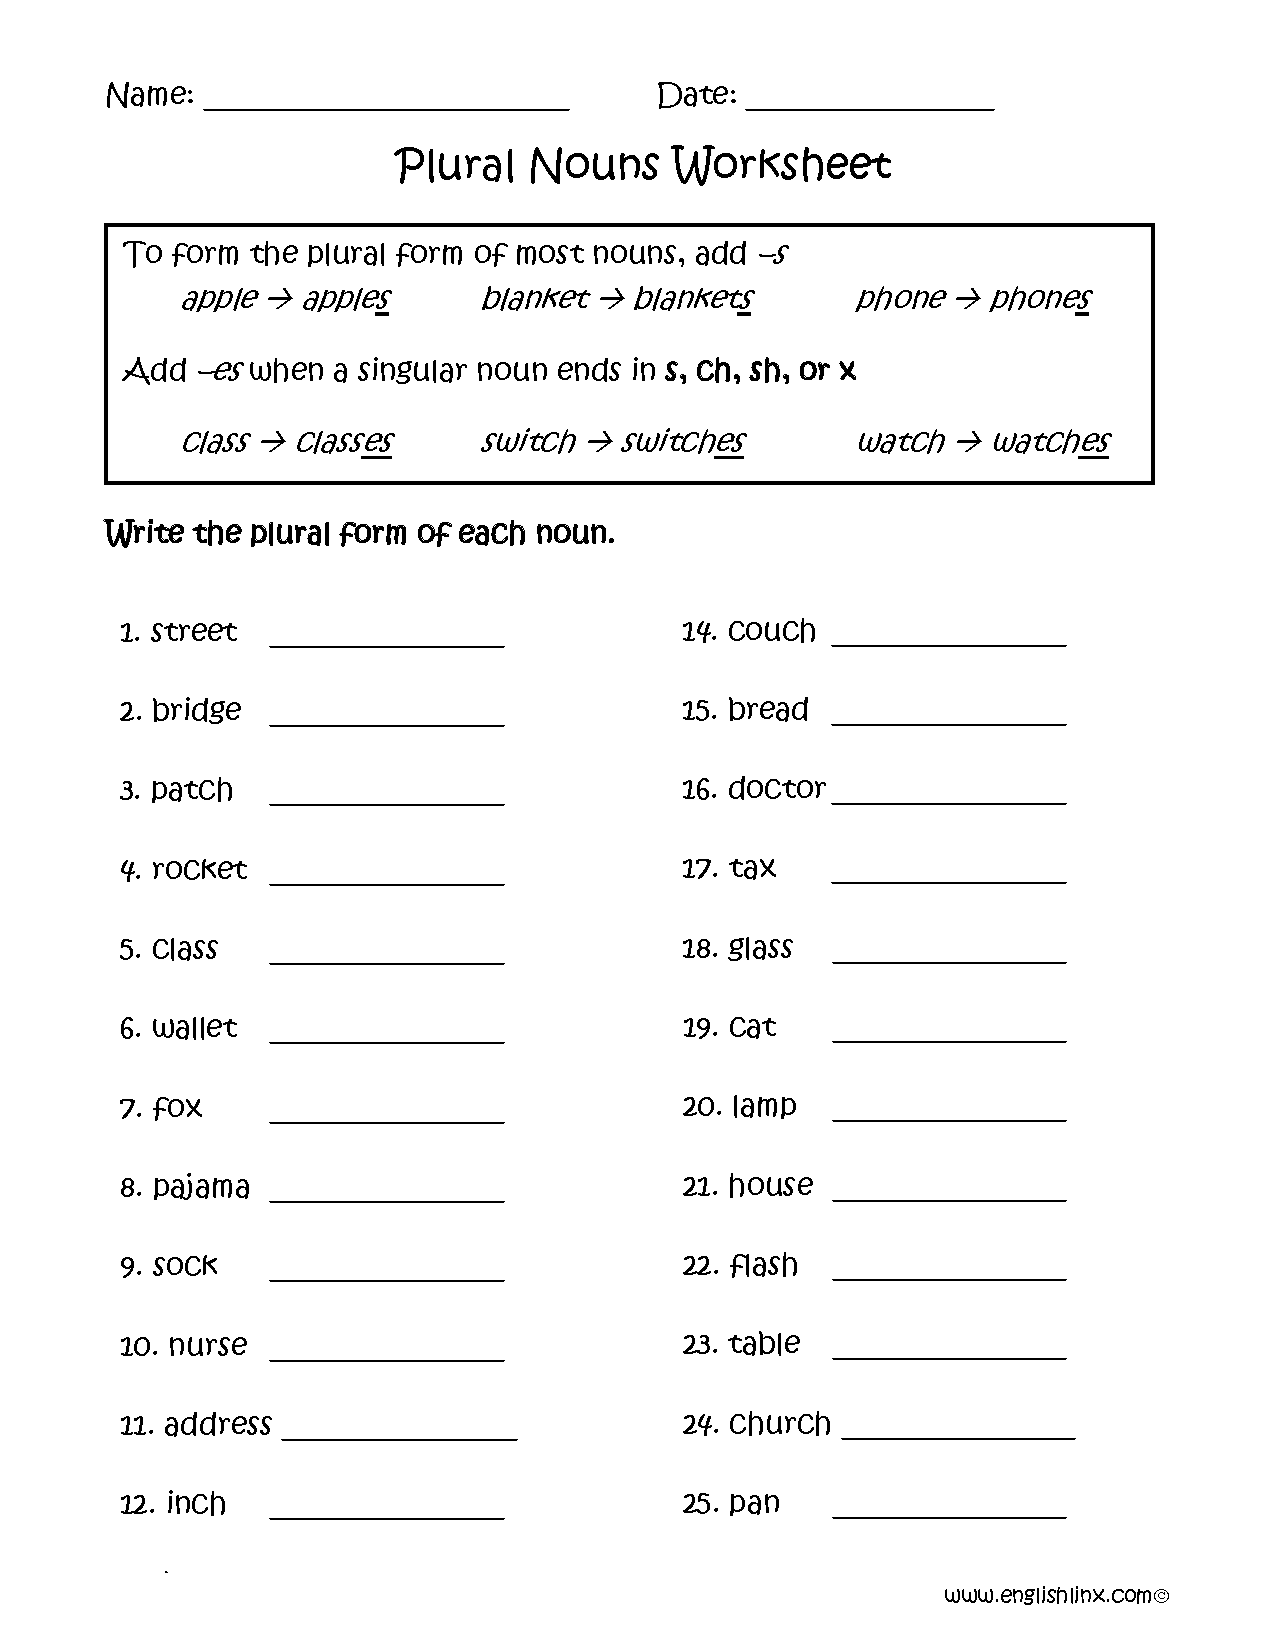 Plural Nouns 3rd Grade Worksheets The Best Worksheets Image